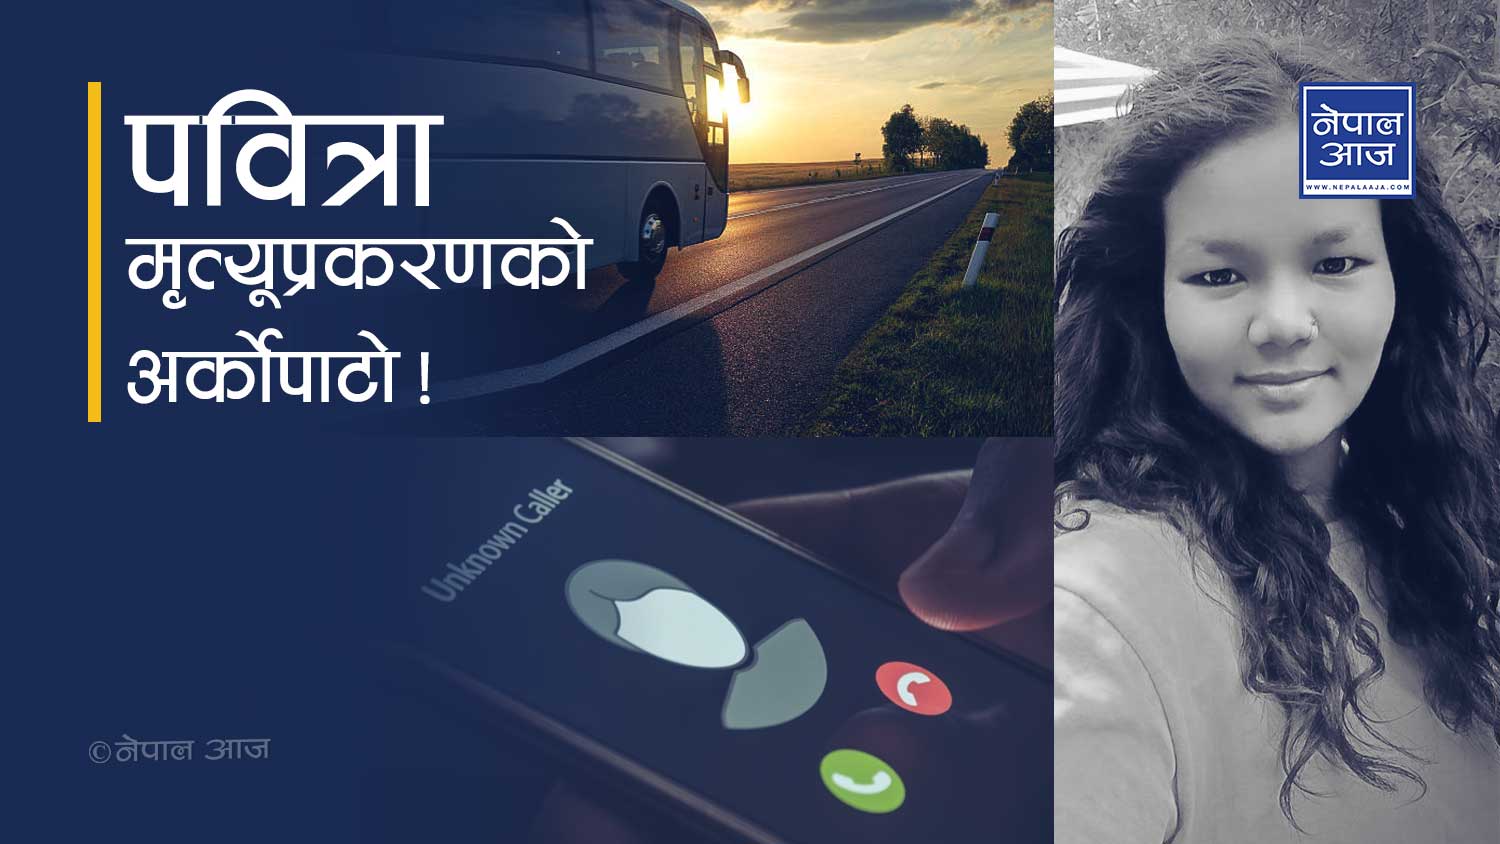 यस्तो छ धनगढीदेखि काठमाडौसम्मको यात्रा विवरण, एउटा फोन जो सँग पवित्राको झगडा परिरहन्थ्यो 